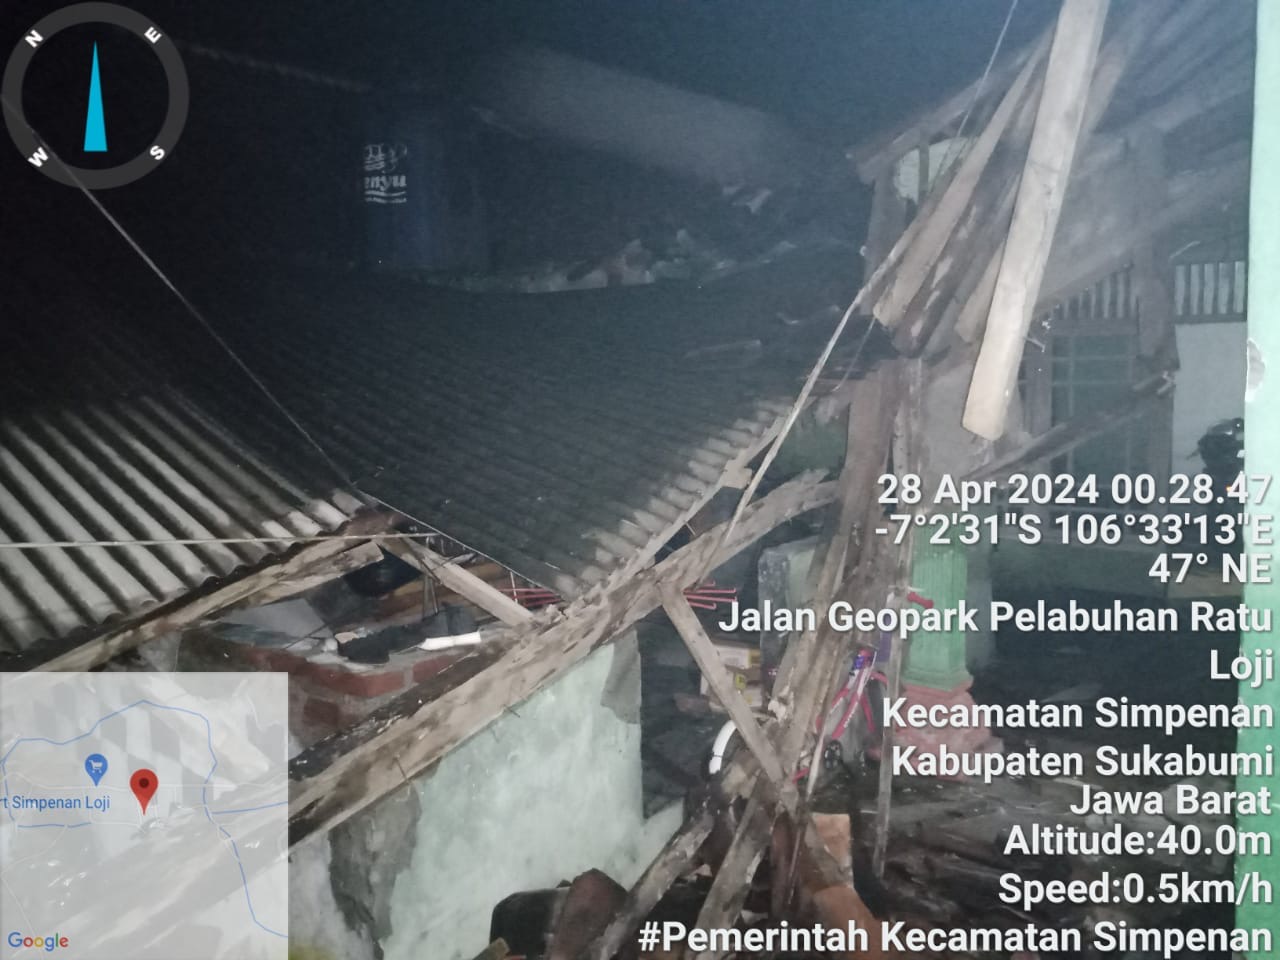 Sembilan kabupaten dan kota terdampak gempa bumi berkekuatan magnitudo 6,2 yang mengguncang Kabupaten Garut, Jawa Barat. (SinPo.id/BNPB)